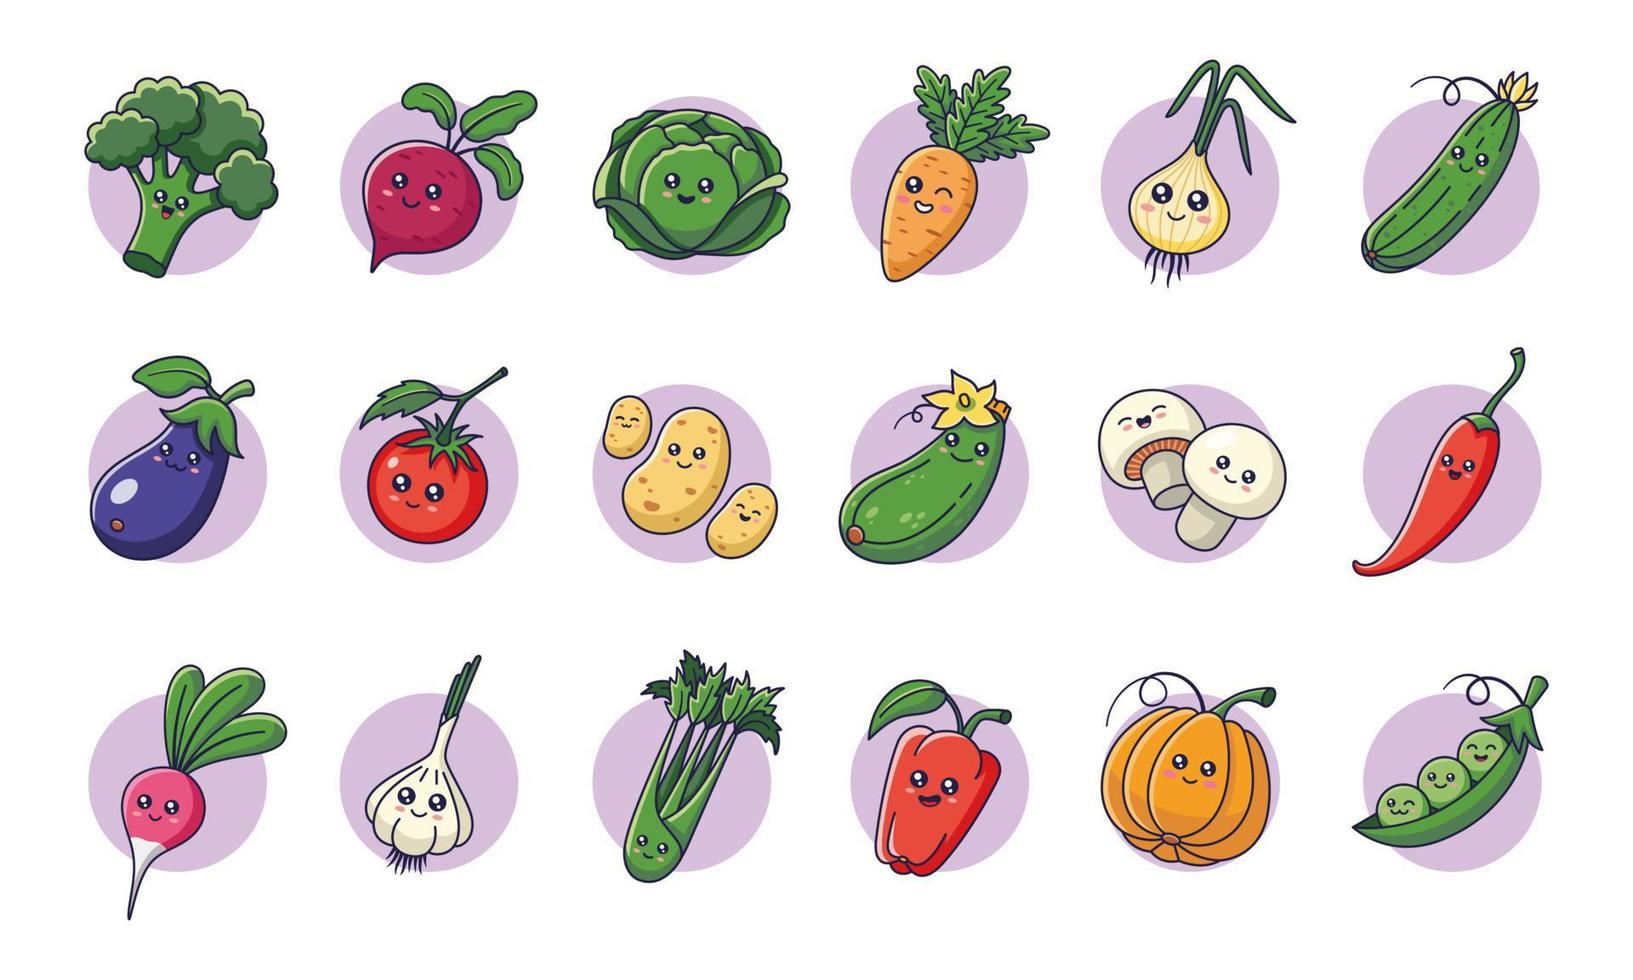 lindos vegetales kawaii ambientados en estilo de dibujos animados. colección de personajes de verduras. iconos de verduras, pegatinas, mascotas. vector